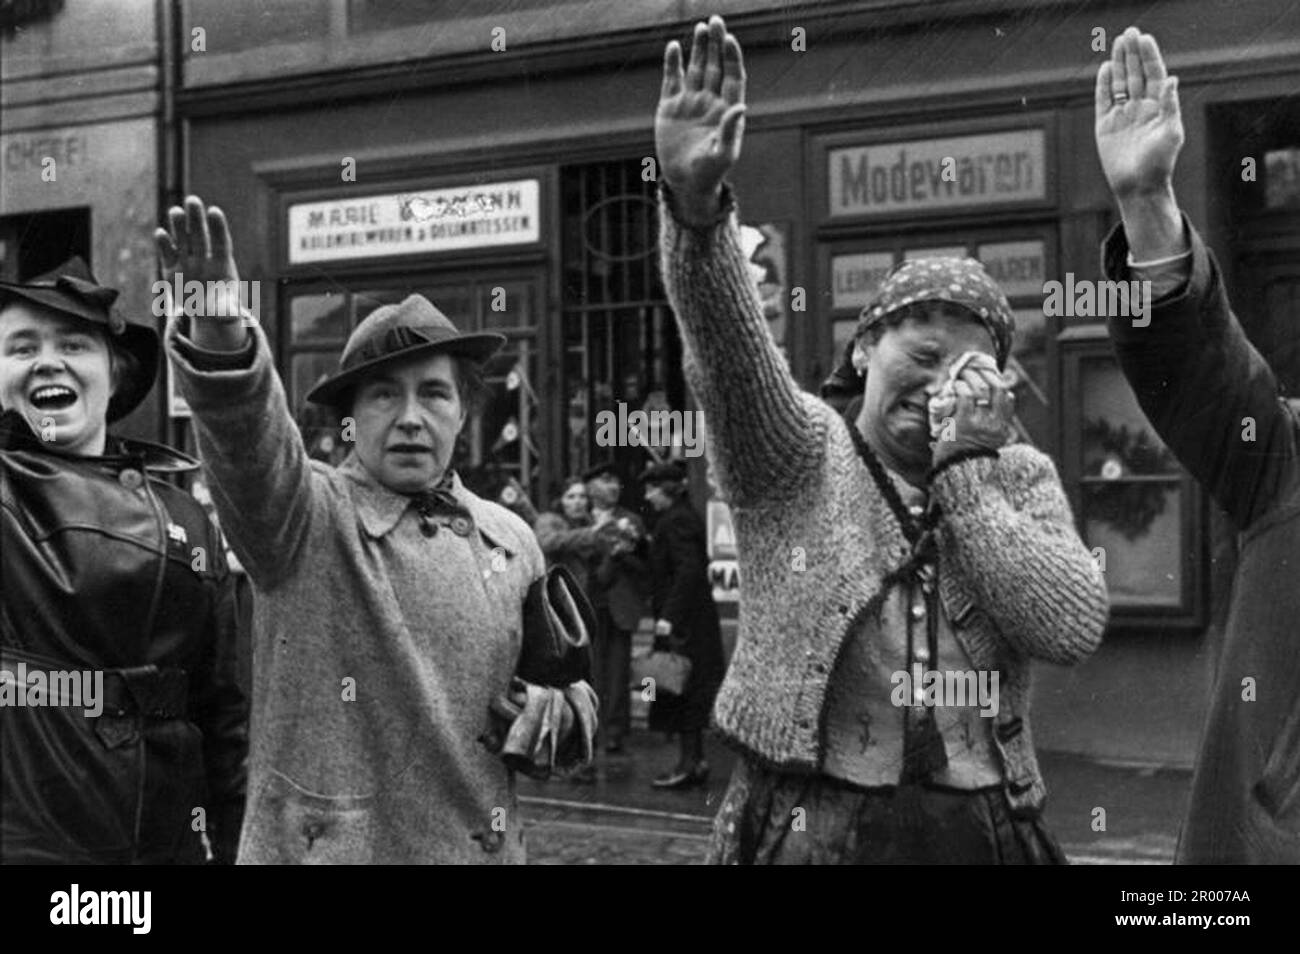 Les gens de la ville tchèque de Chebb (Eger en allemand) saluent les troupes allemandes entrant dans la ville dans les Anschluss du Sudètes en octobre 1938.une des femmes est dans des larmes de joie. Après l'annexion de l'Ausrtia, Hitler a exigé qu'on lui donne la région des Sudètes en Tchécoslovaquie. Lors de la conférence de Munich en septembre 1938, les puissances occidentales ont accepté cela et les nazis ont occupé la zone. Peu de temps après, Hitler a rompu sa promesse et a envahi le reste de la Tchécoslovaquie avant de tourner son attention vers la Pologne. Banque D'Images